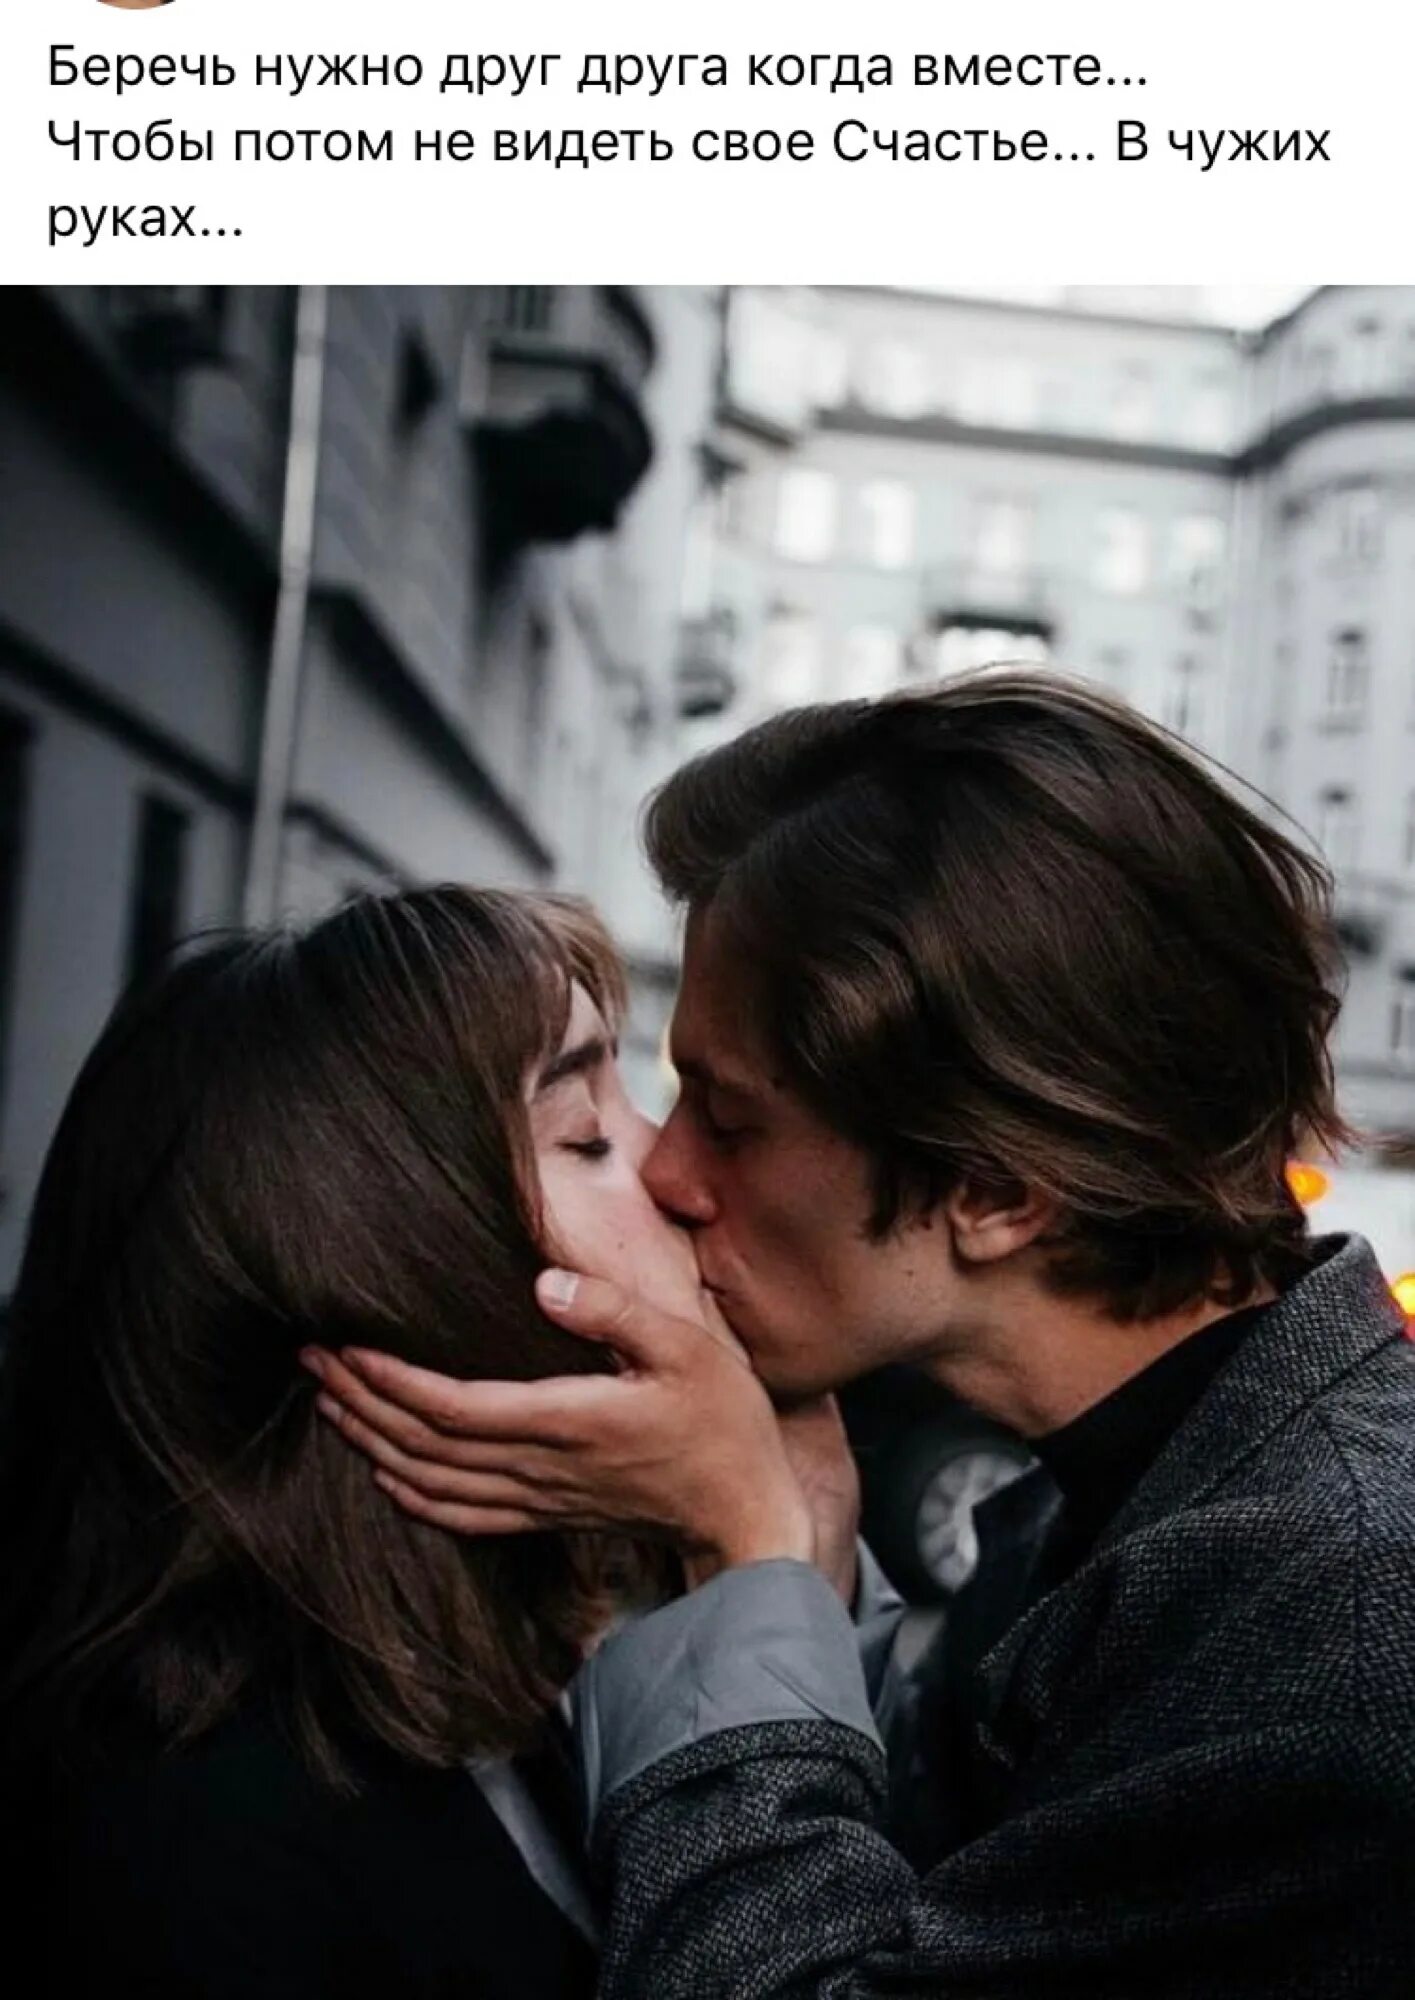 Первый поцелуй. Как правильно целоваться. КПК прпвильно целоваться?. Научите целоваться.